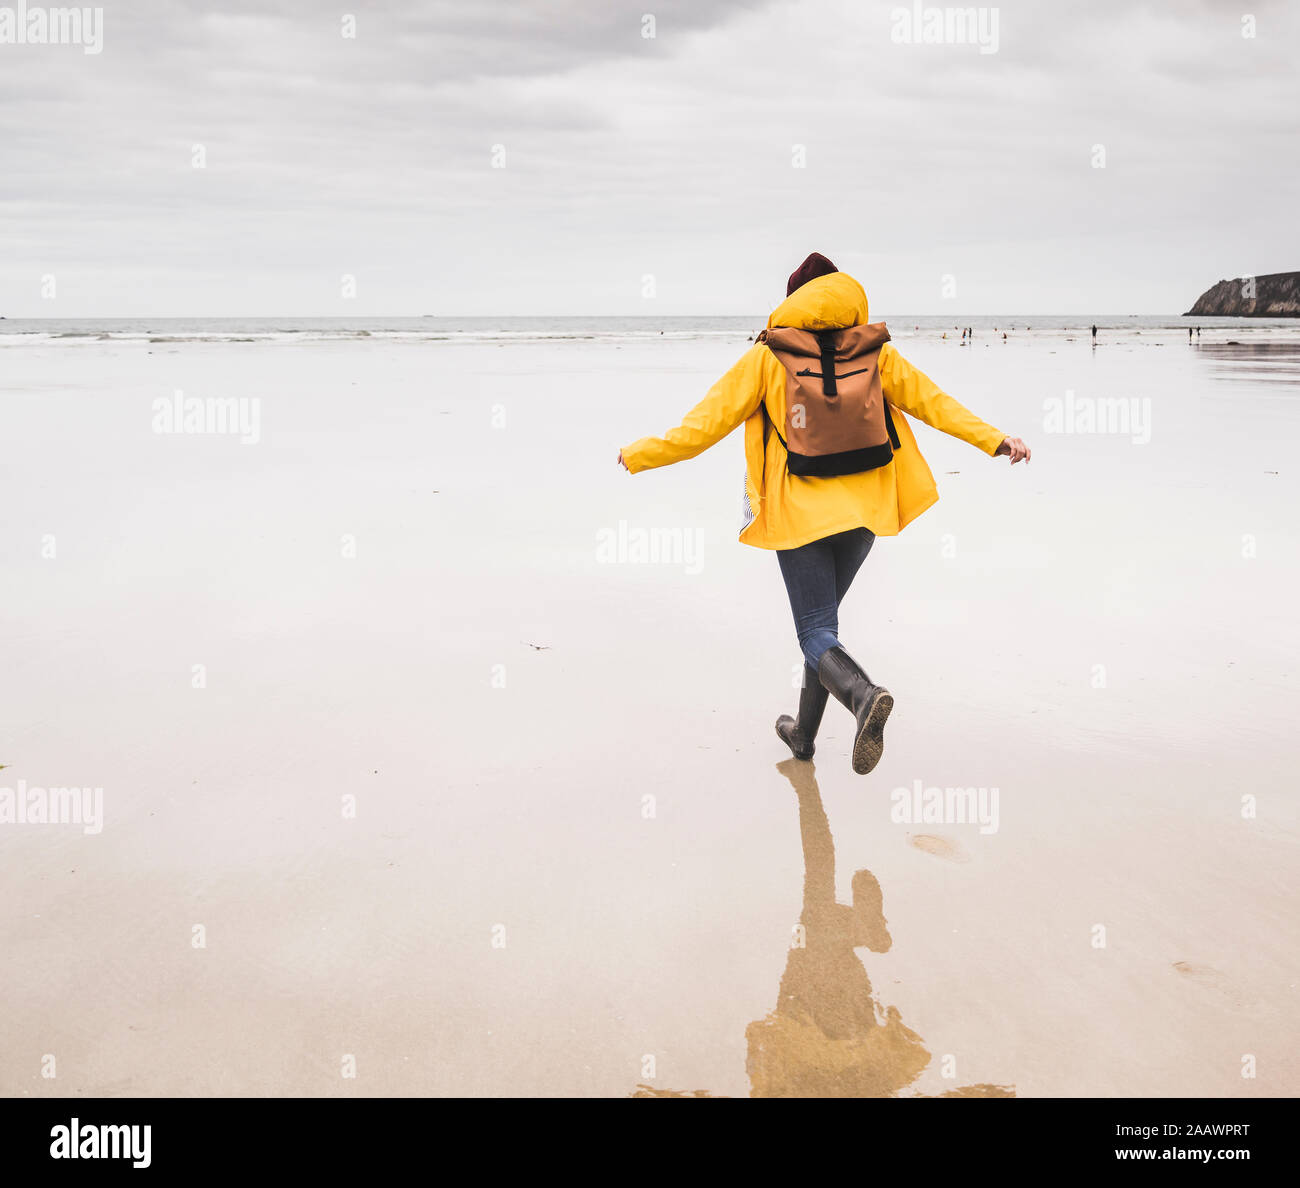 Jeune femme portant veste de pluie jaune et tournant à la plage, Bretagne, France Banque D'Images